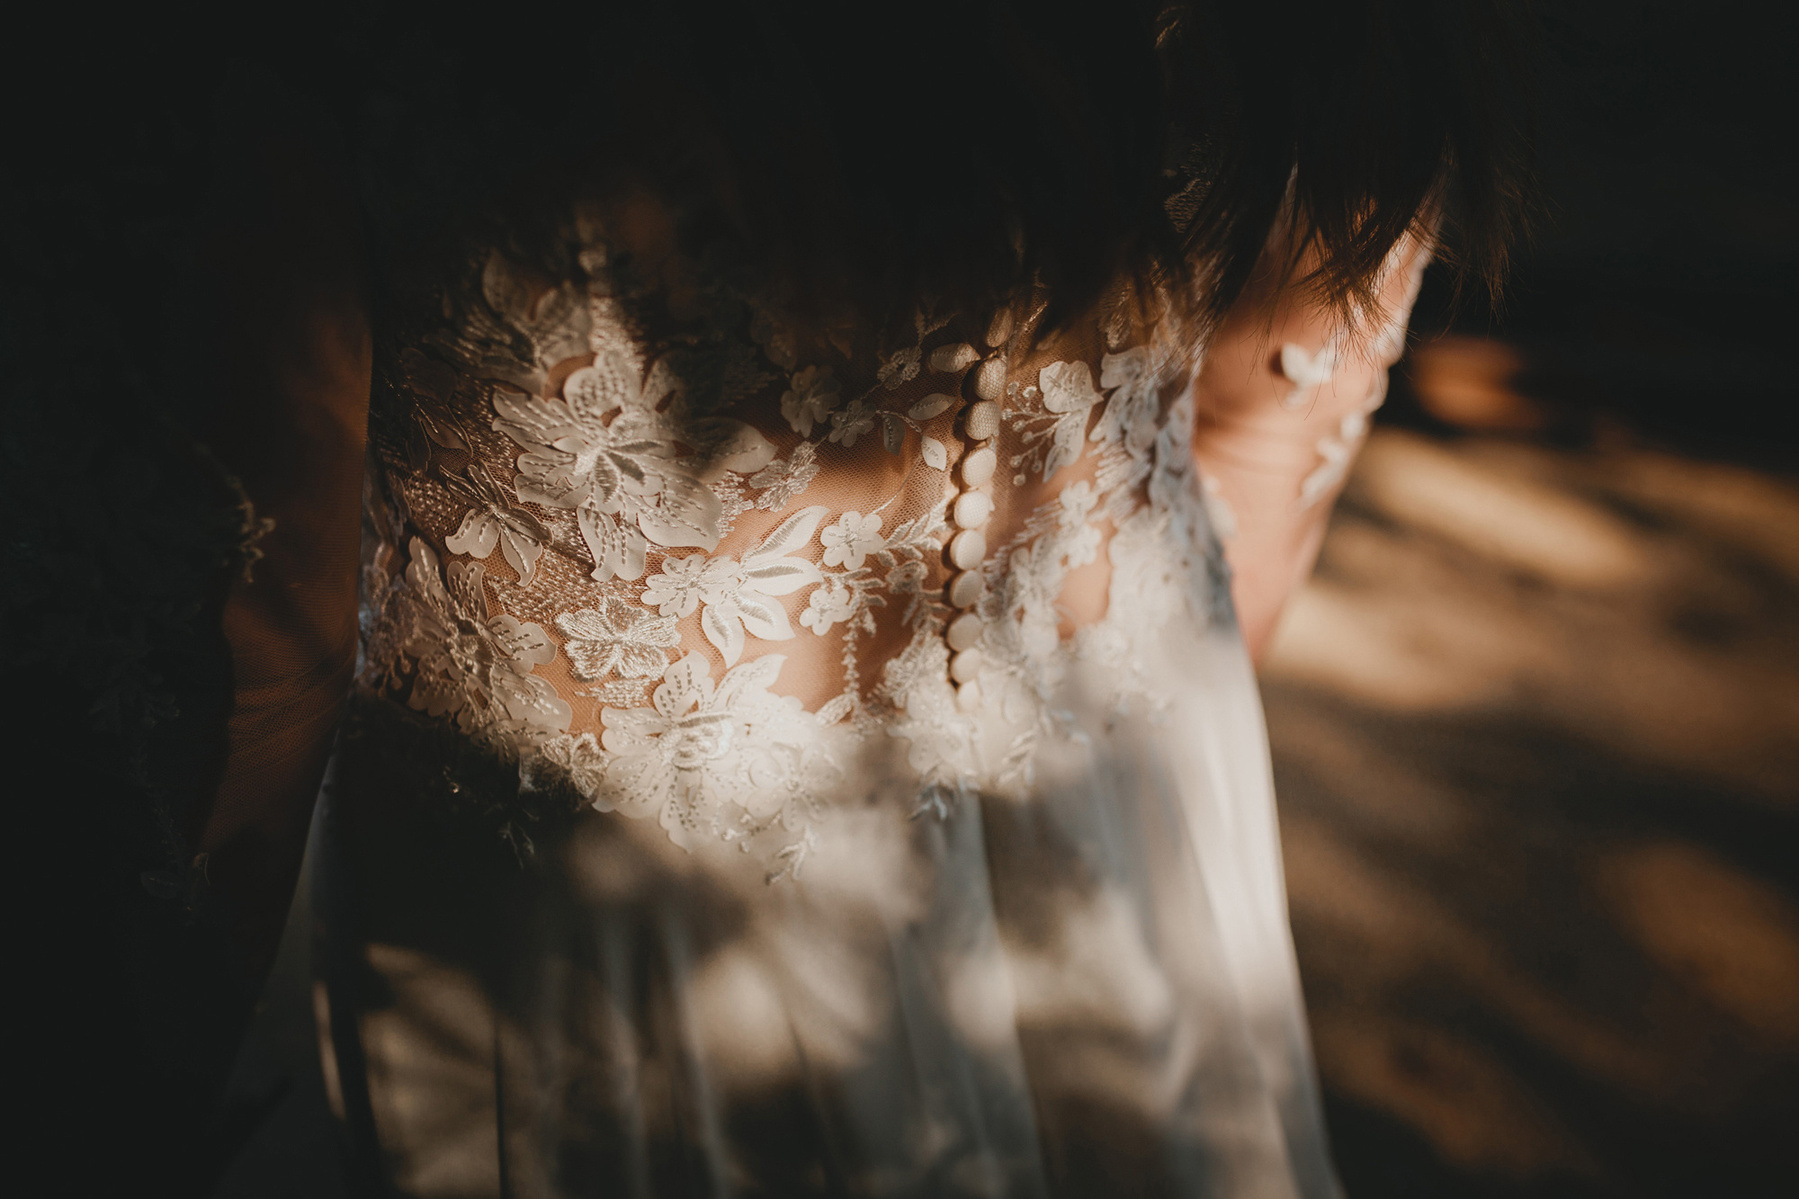 Detailaufnahme eines Brautkleids mit Knopfleiste und Spitze am Rücken. Die Sonne malt ein Schattenspiel auf das Hochzeitskleid.